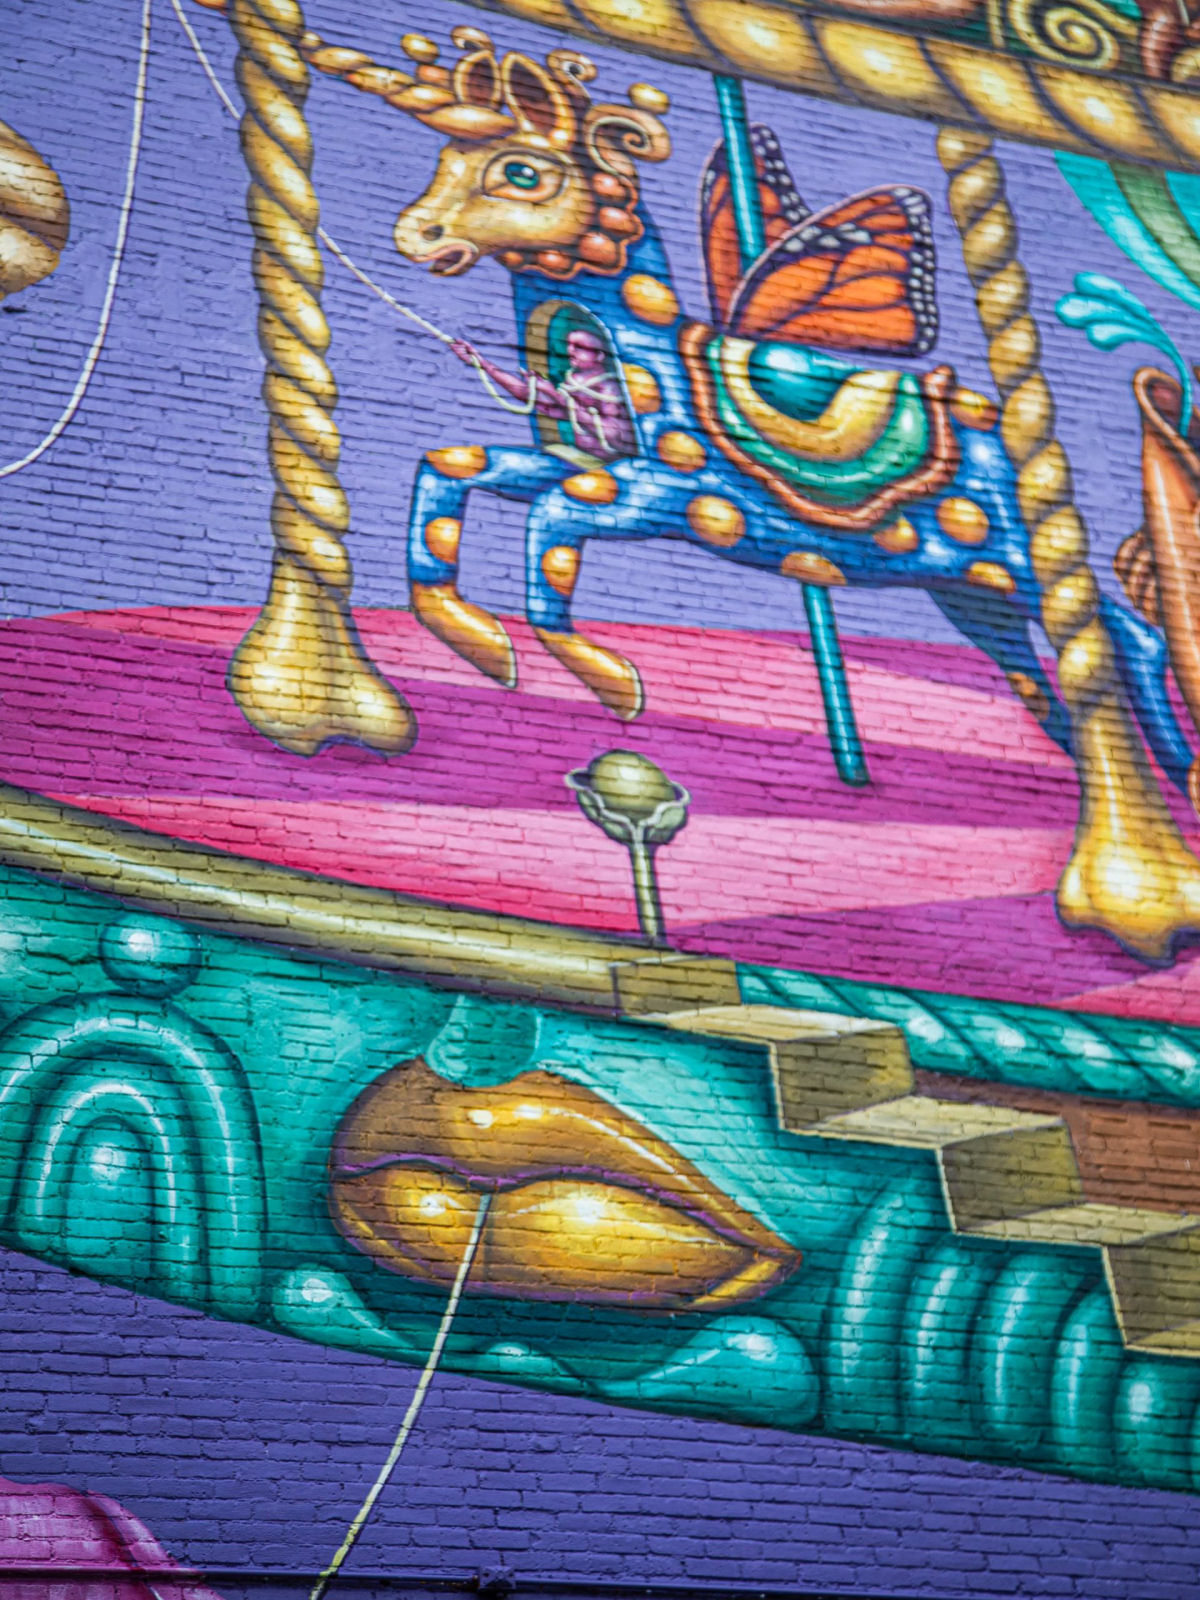 Um monstro brincalho e grotesco aparece em um mural de Montreal 07